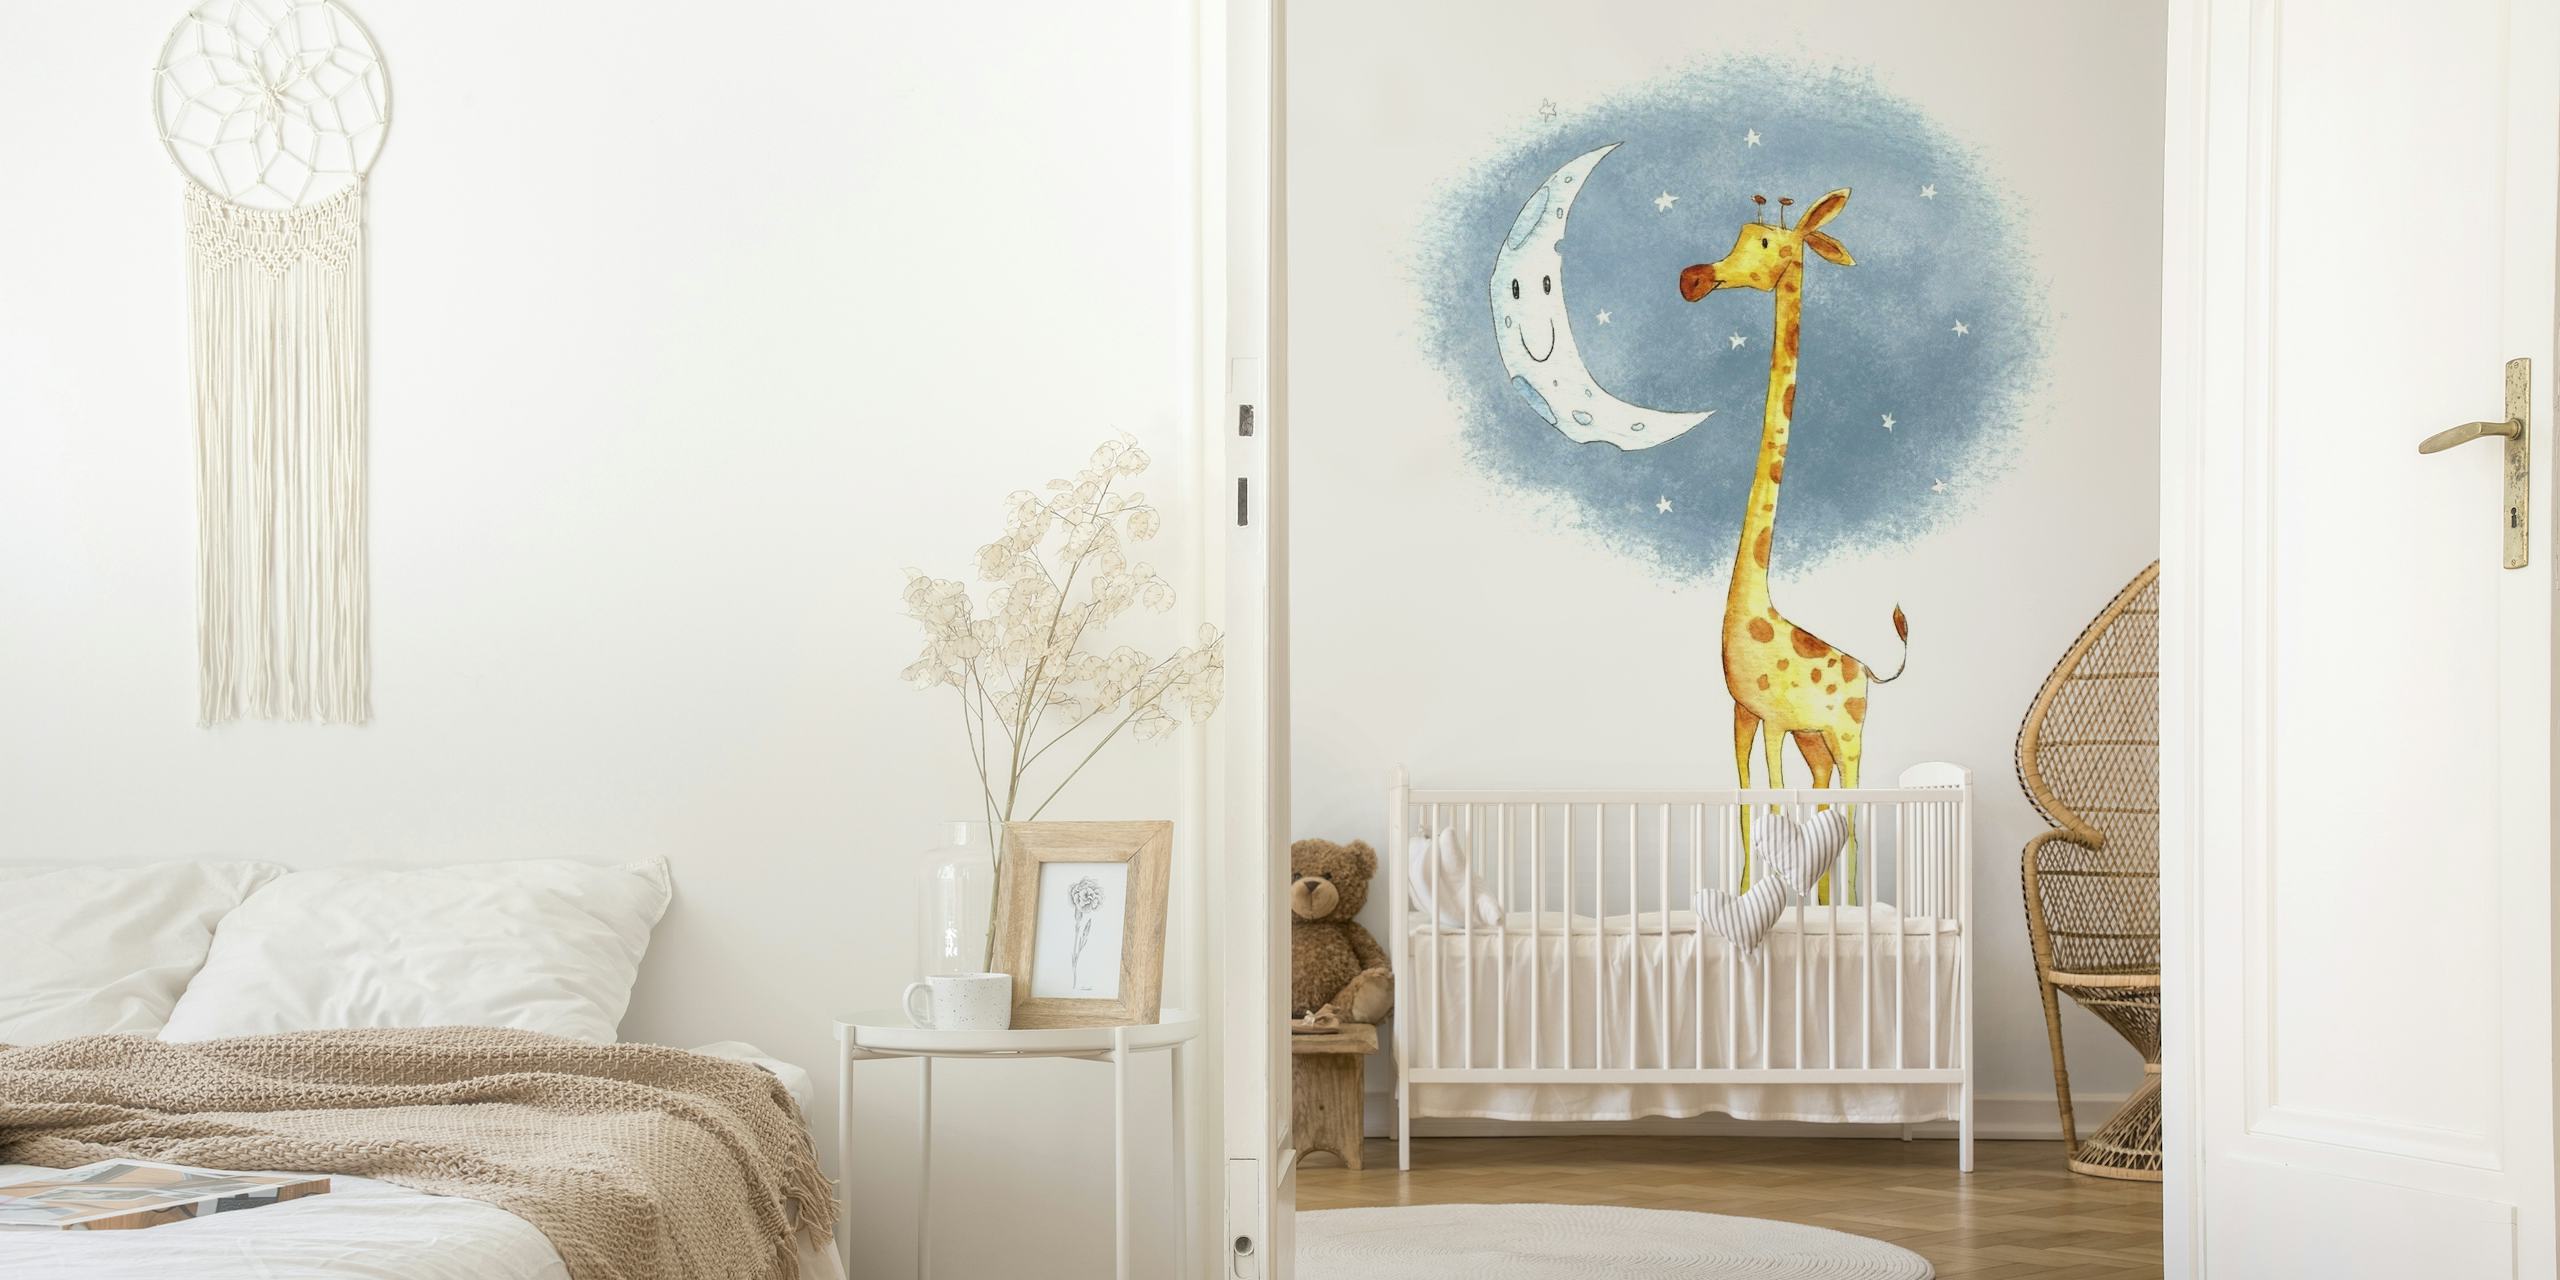 Charmante girafe et illustration de lune souriante sur fond aquarelle de nuit étoilée pour une fresque murale